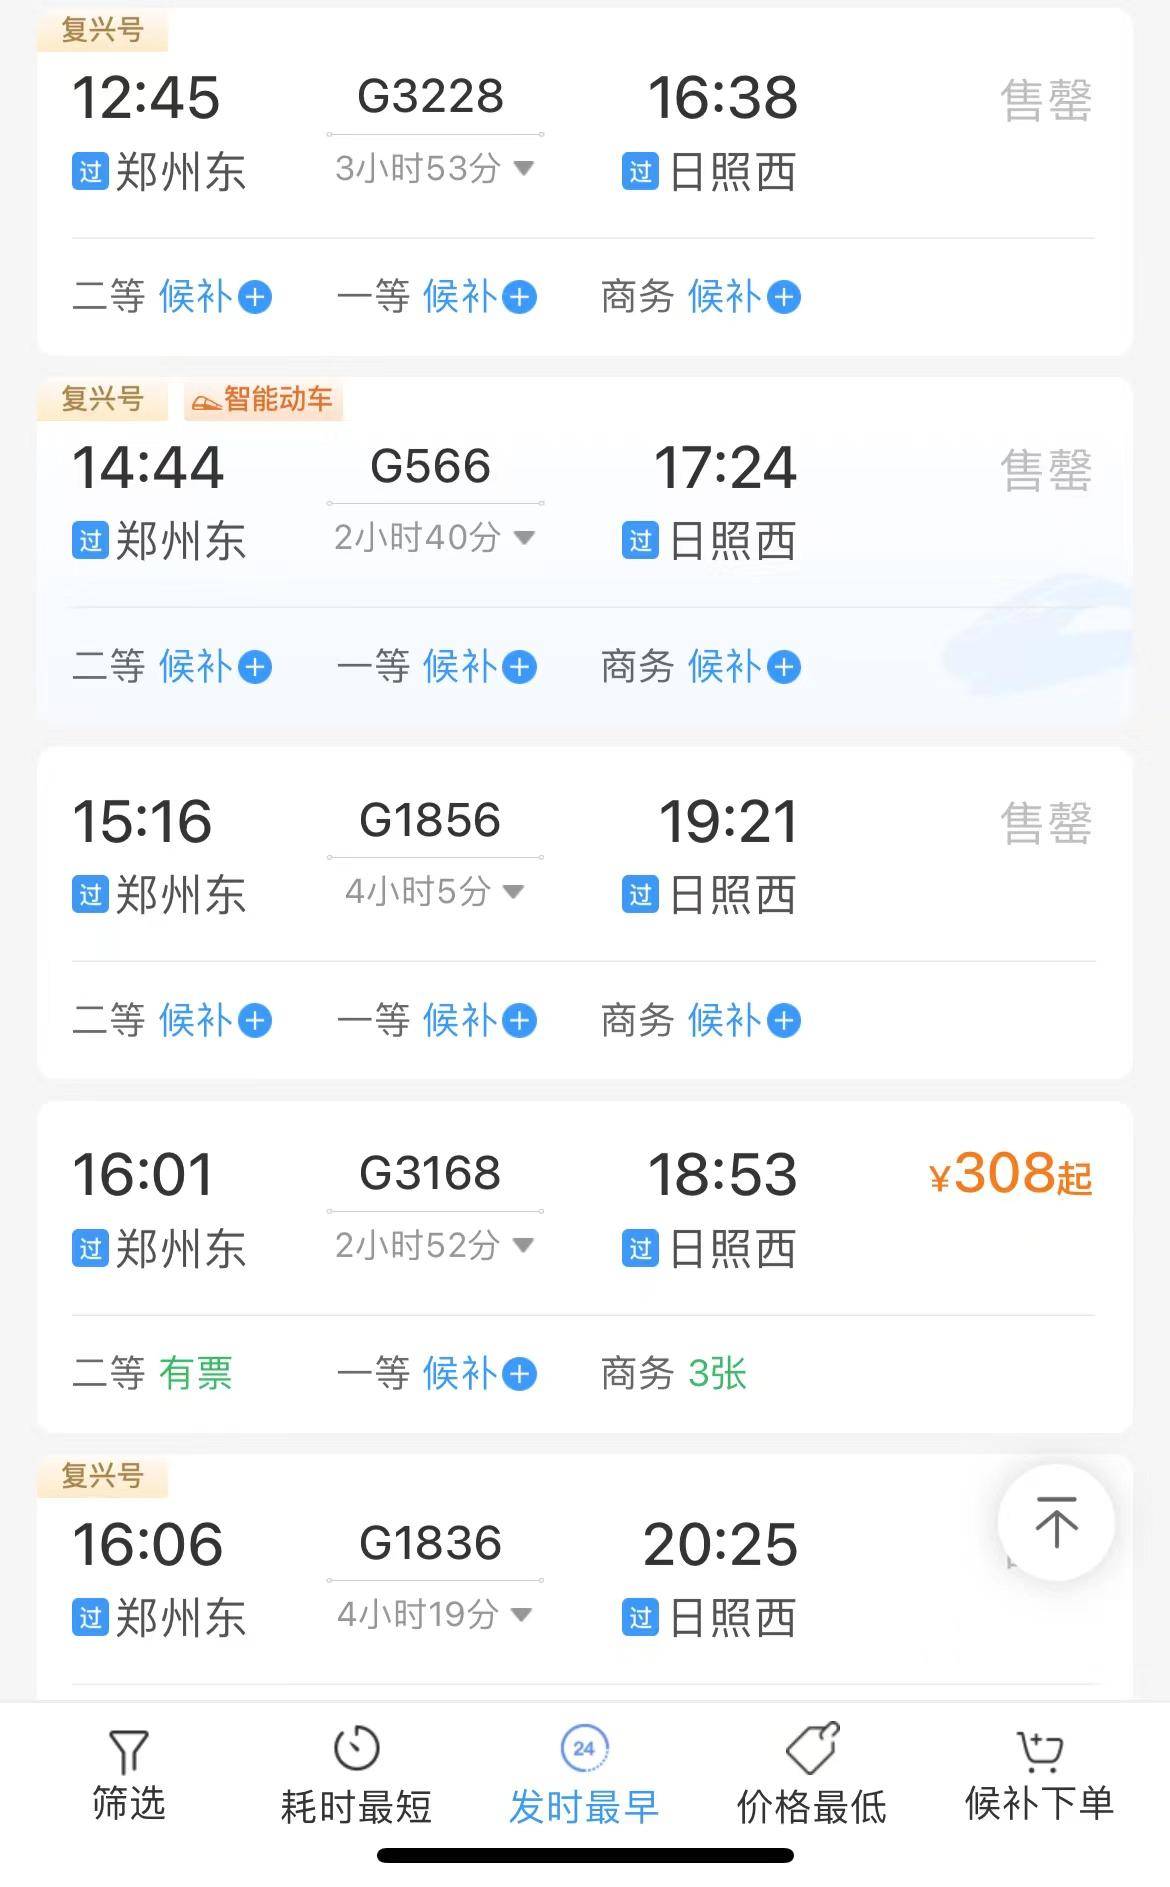 日兰高铁全线贯通!以后郑州到青岛,可节省2个半小时